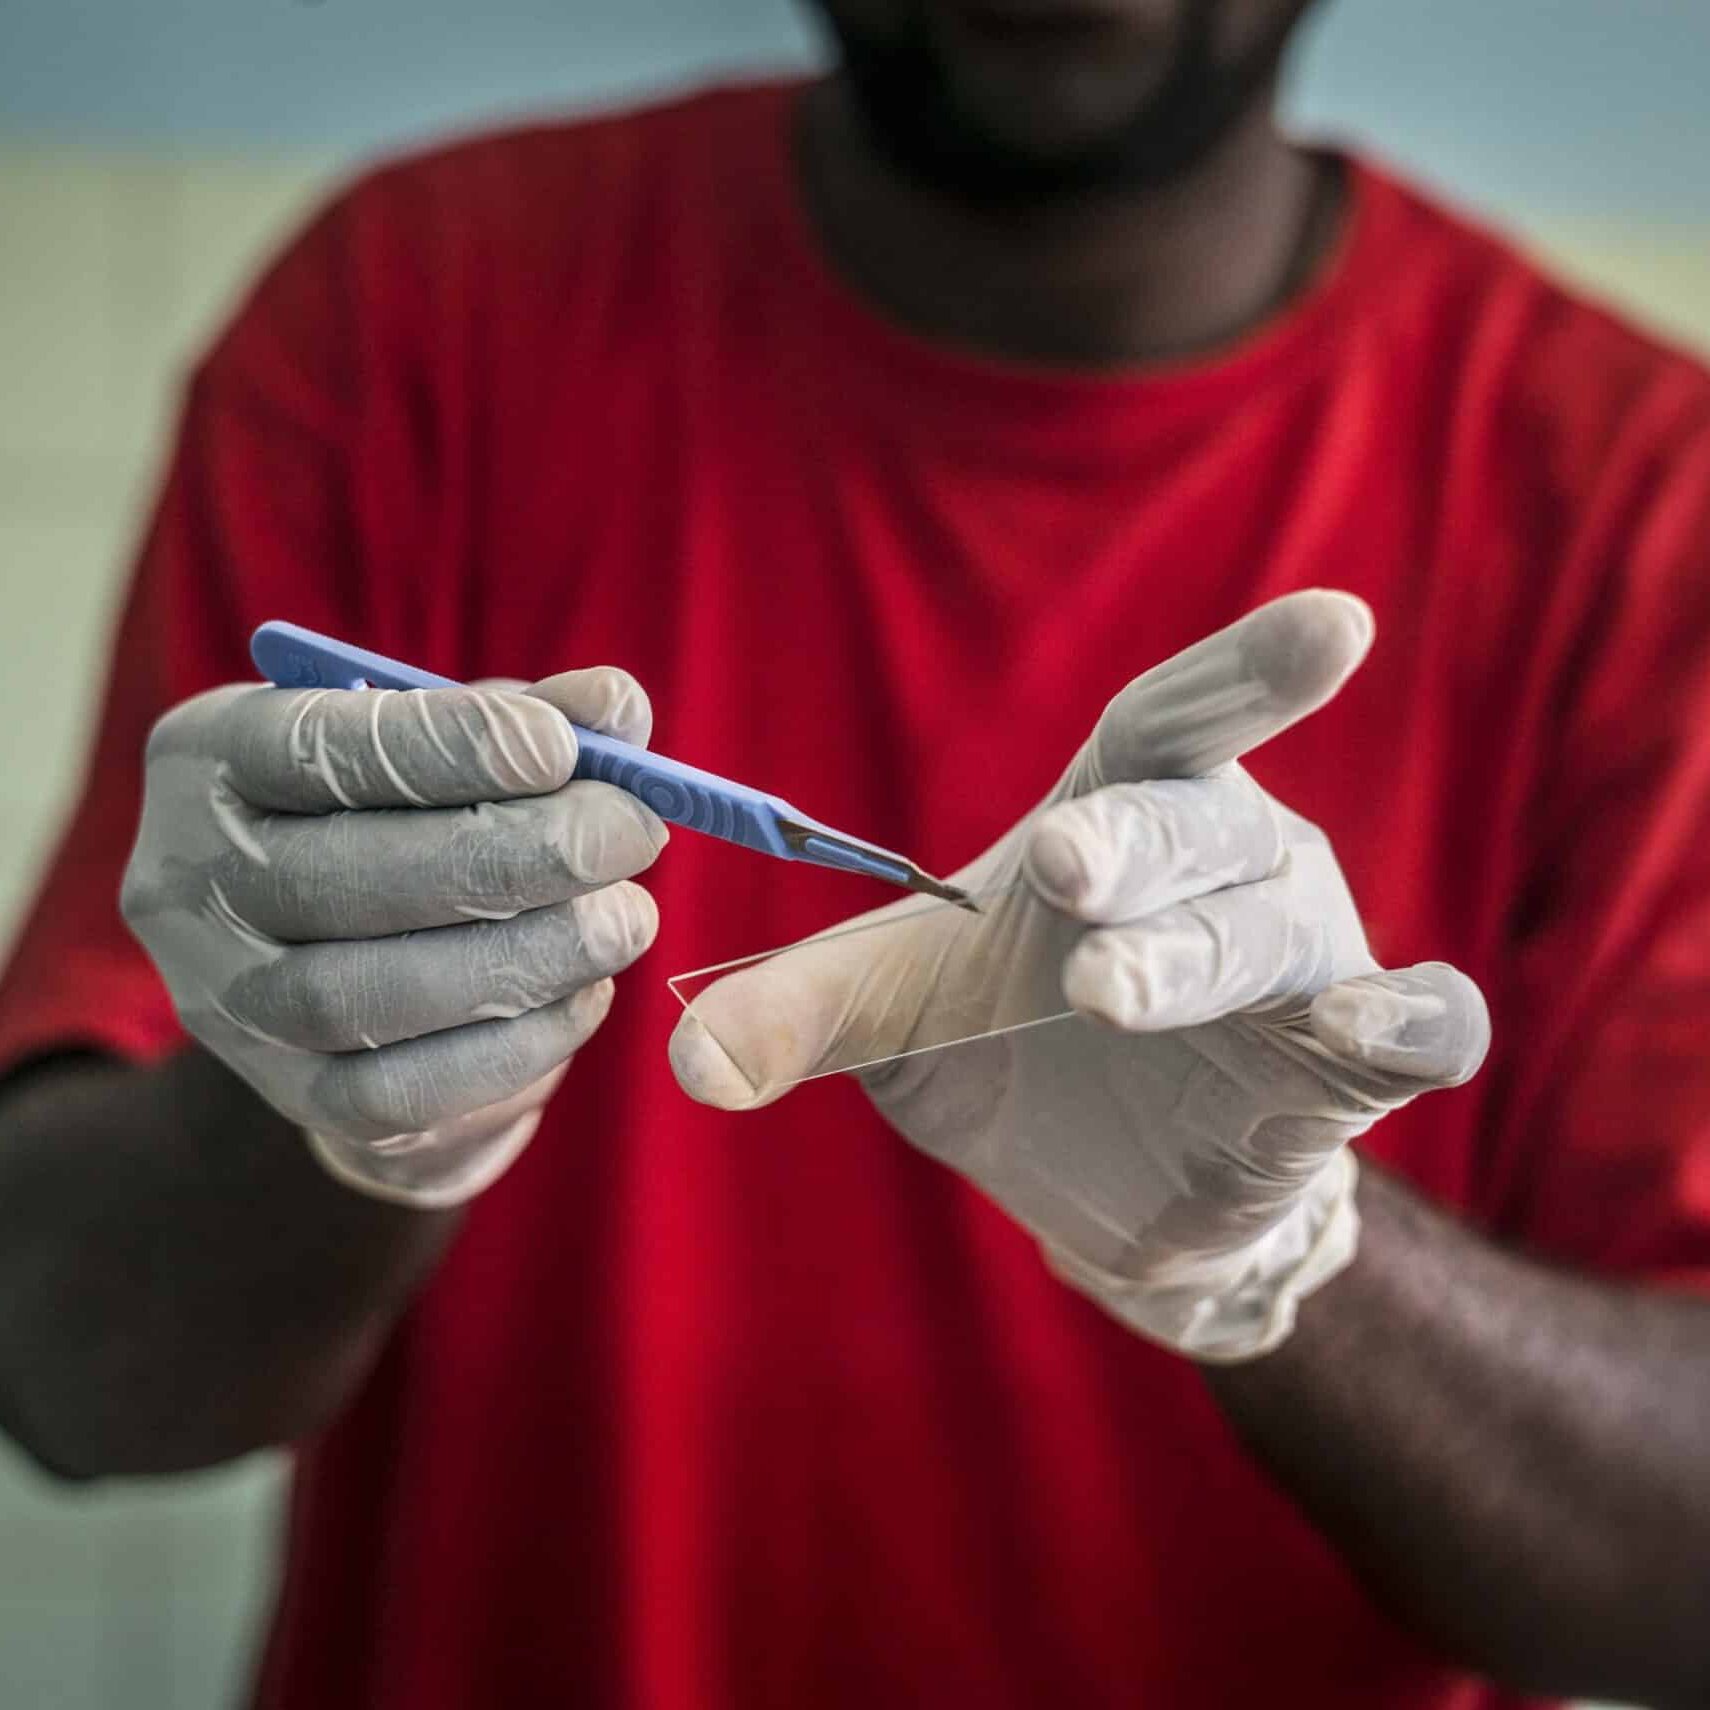 20180425 - ACTION DAMIEN COMORES , Anjouan.  Prelevement sur patients de la lepre pour études. Hadidja Allaoui, 18 ans , lepre MB , depistée le 25/04/18
PHOTO: JOHANNA DE TESSIERES / COLLECTIF HUMA